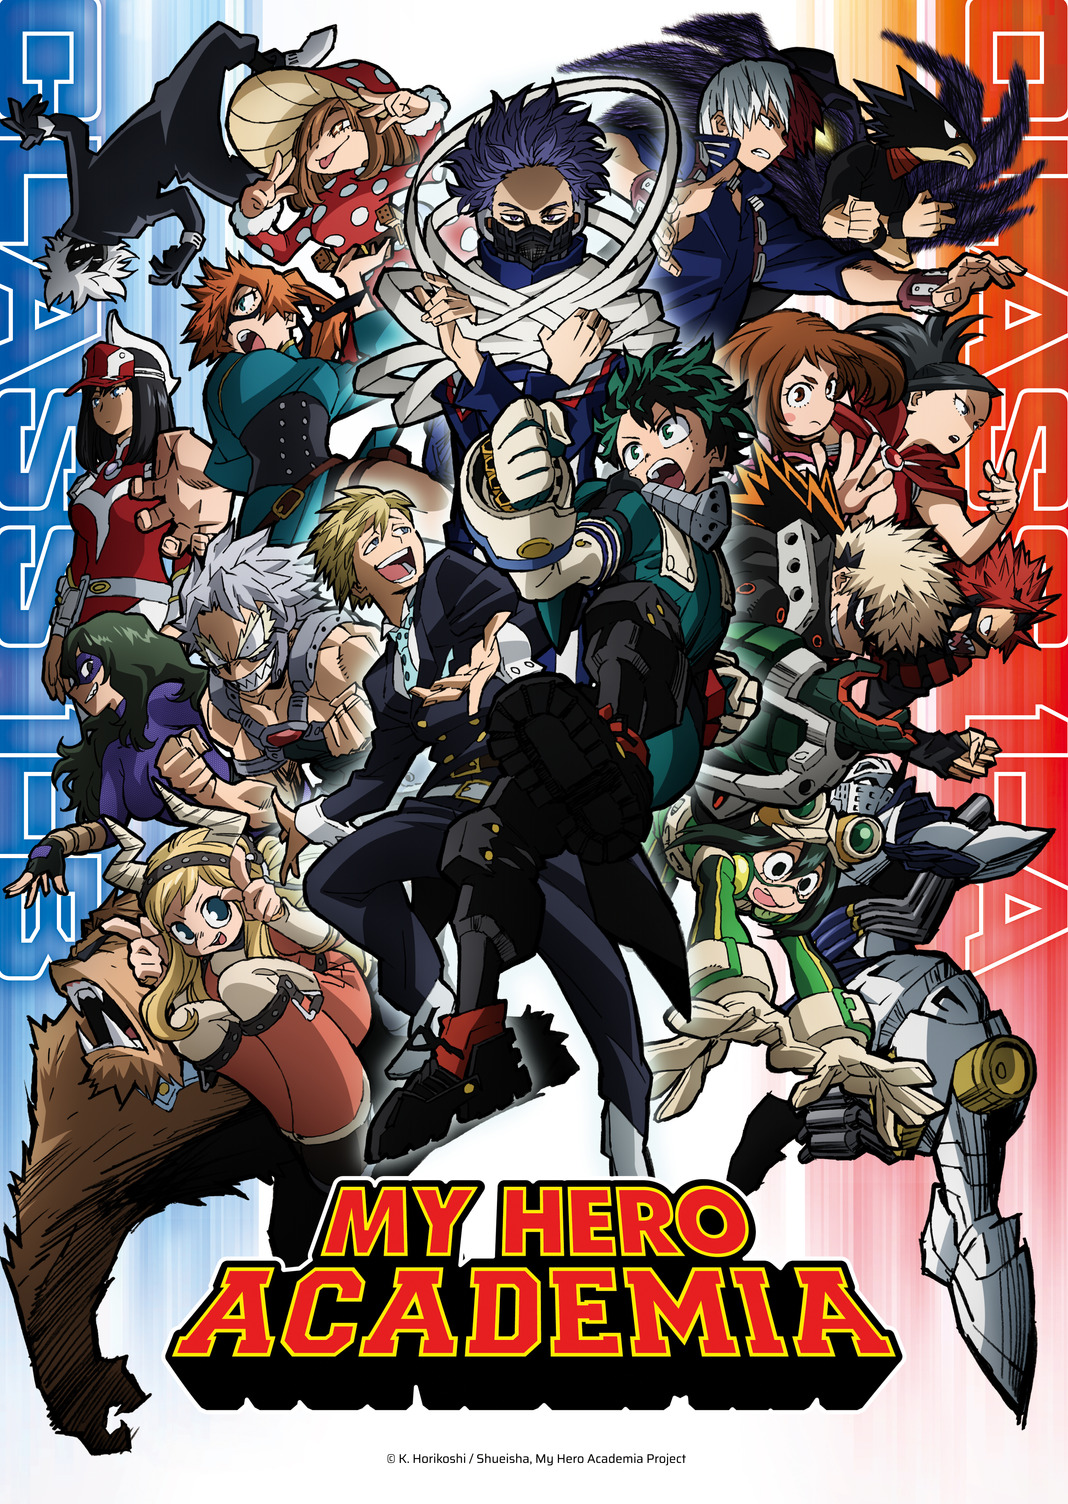 My Hero Academia regresa a Crunchyroll con su quinta temporada